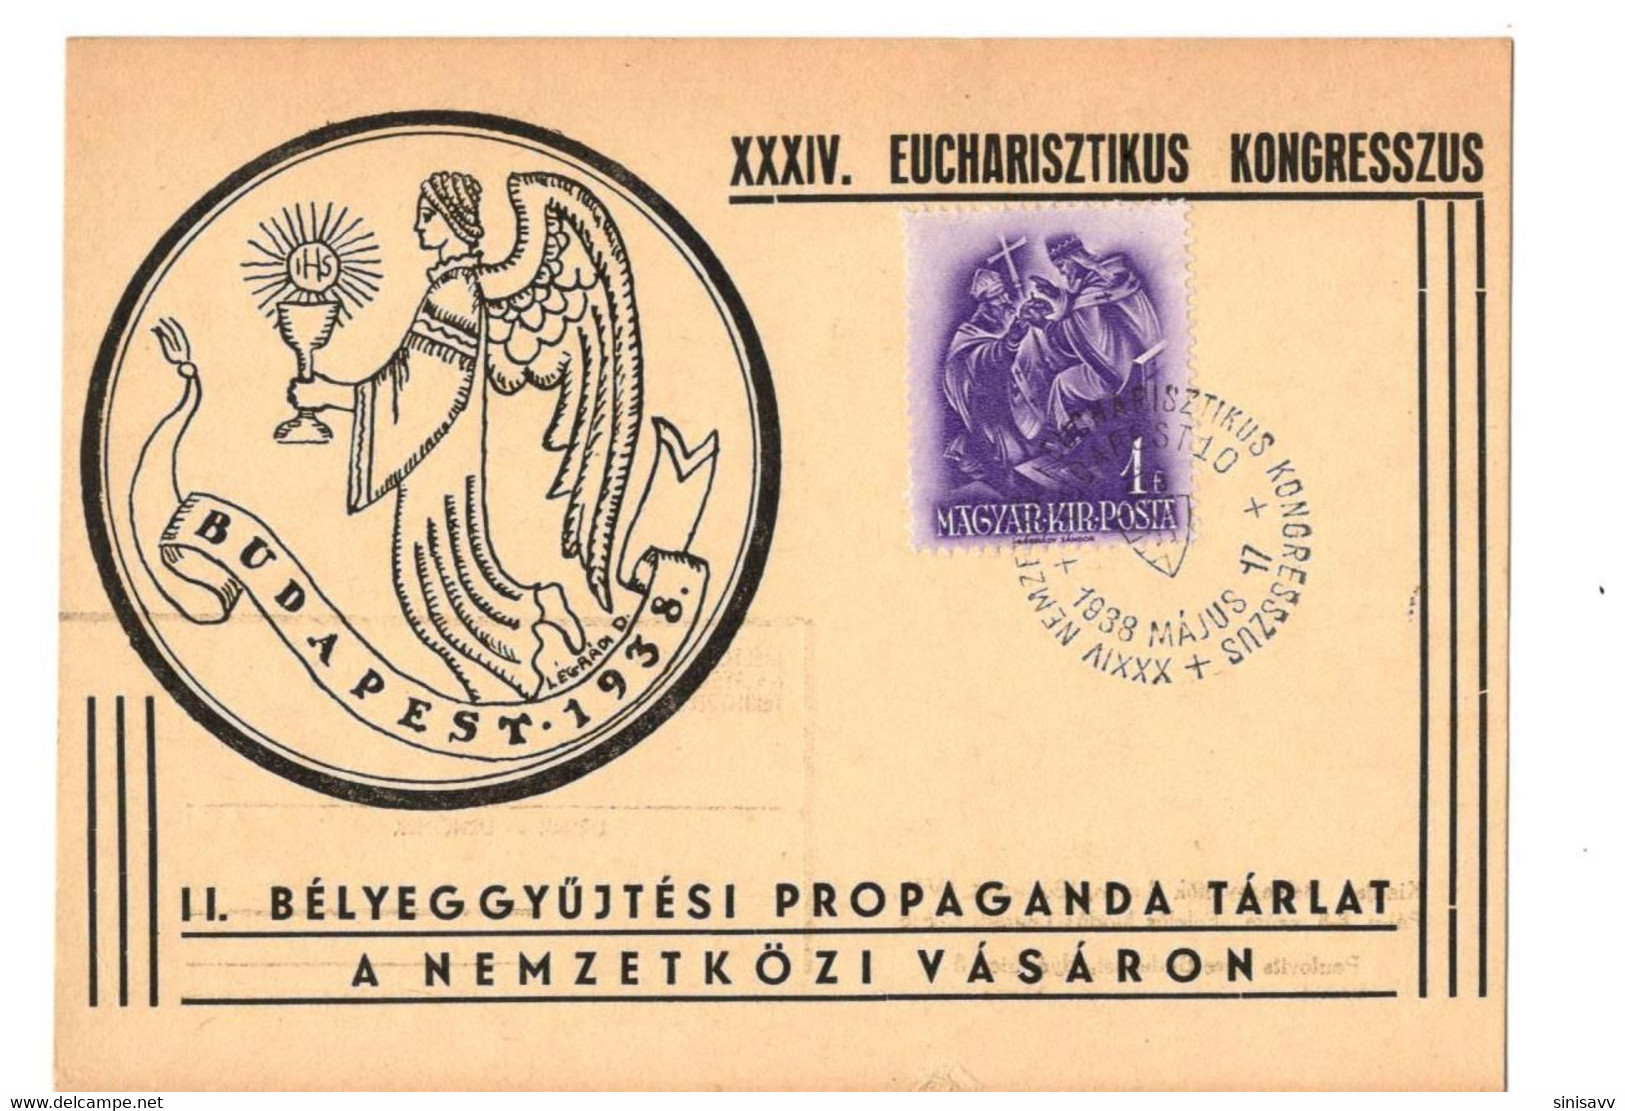 HUNGARY - XXXIV. EUCHARISZTIKUS KONGRESSZUS 1938 - Souvenirbögen